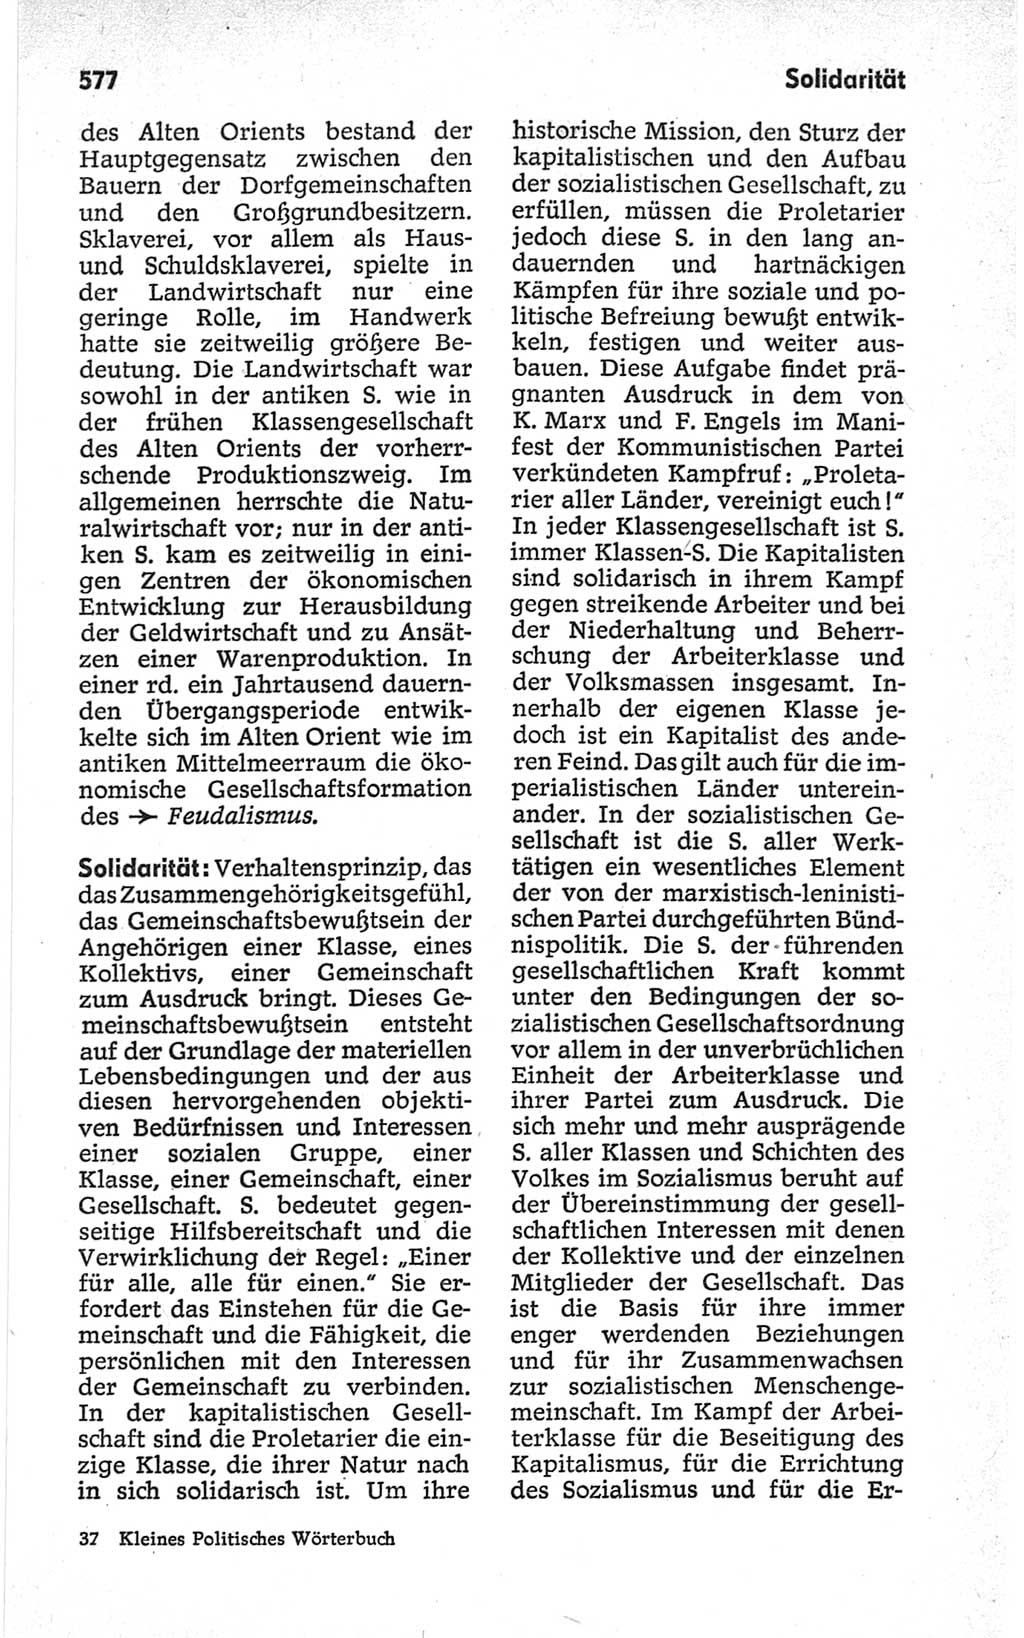 Kleines politisches Wörterbuch [Deutsche Demokratische Republik (DDR)] 1967, Seite 577 (Kl. pol. Wb. DDR 1967, S. 577)